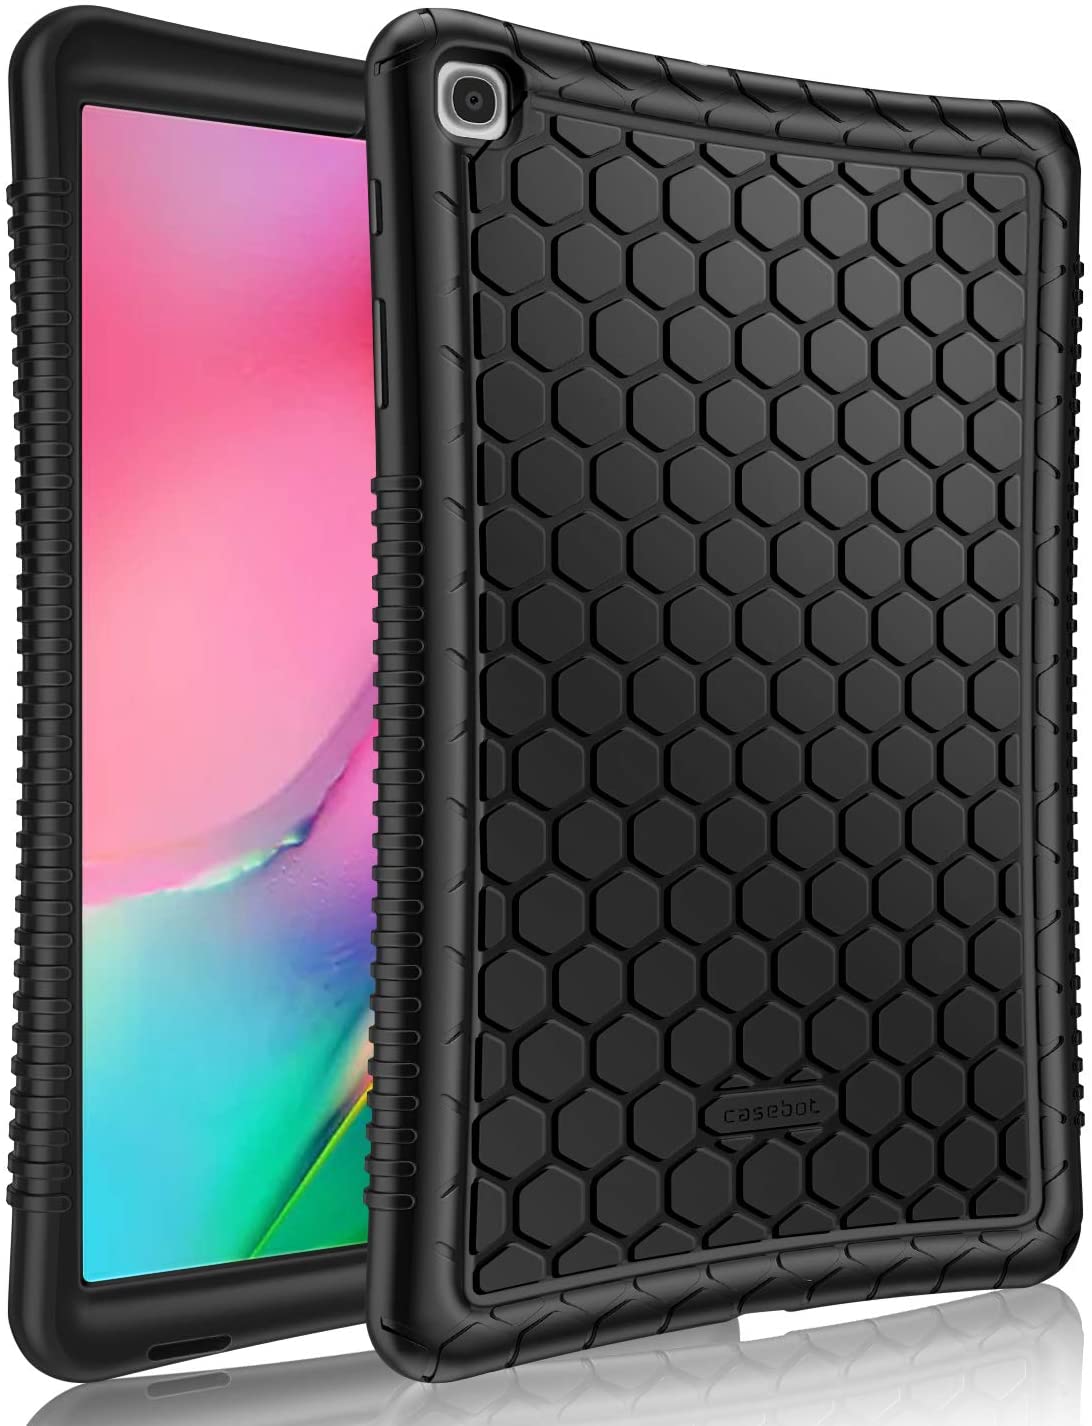 Samsung Galaxy Tab A 10.1 Case Silicone Black